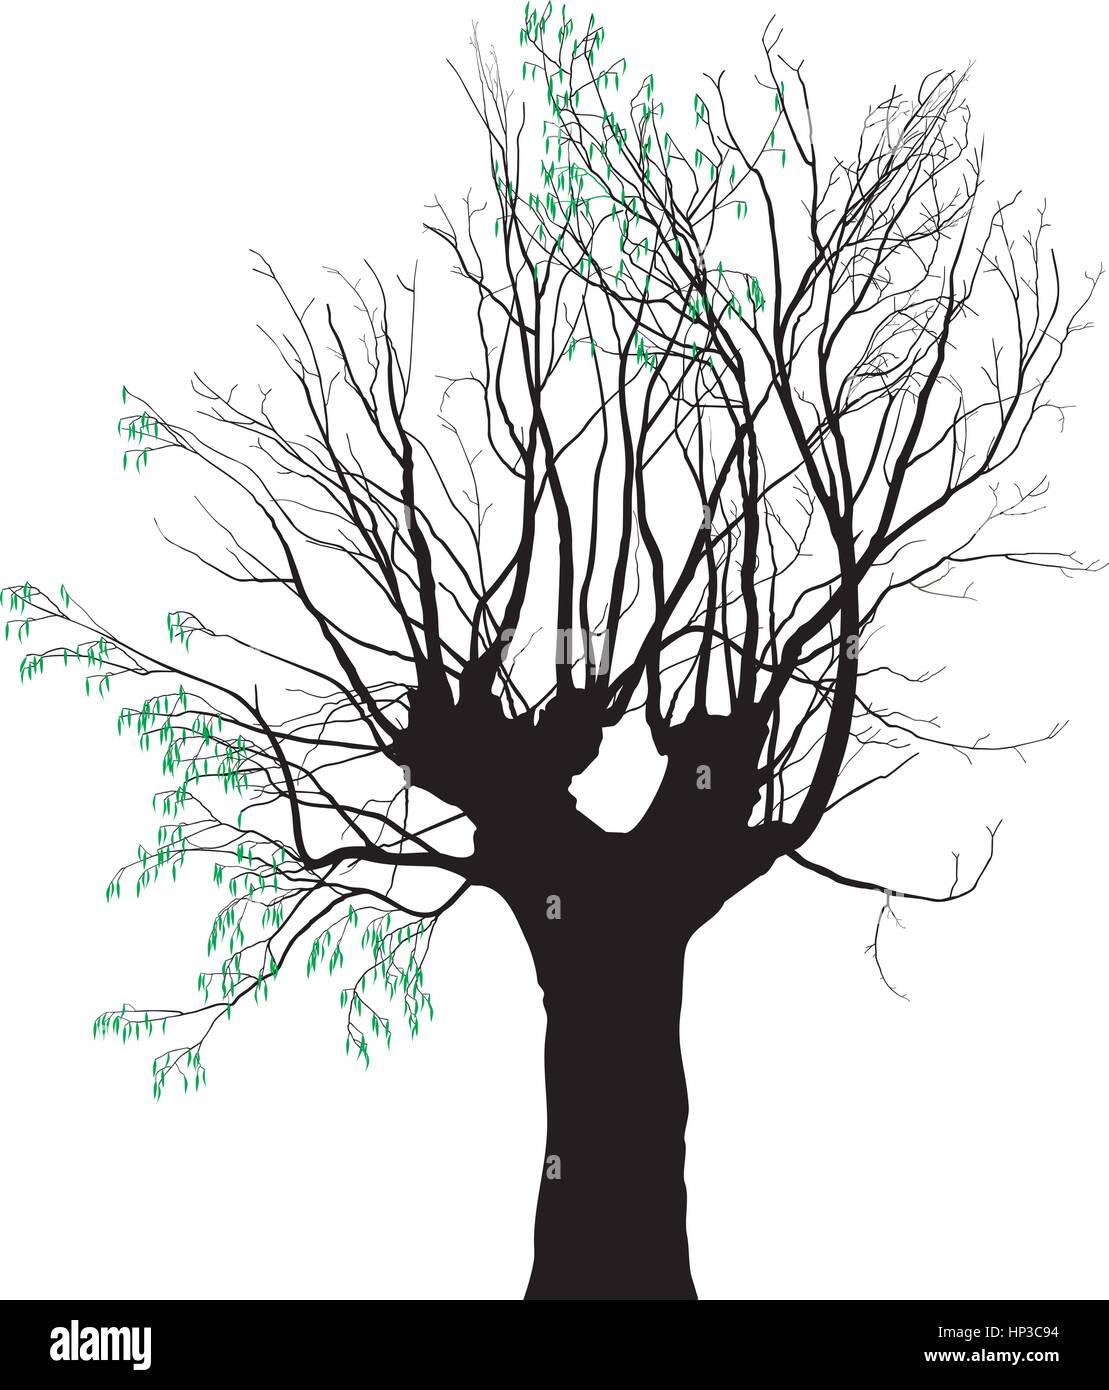 Vektor-Illustration der alten Baum auf die jungen Blätter zu vertreiben Stock Vektor